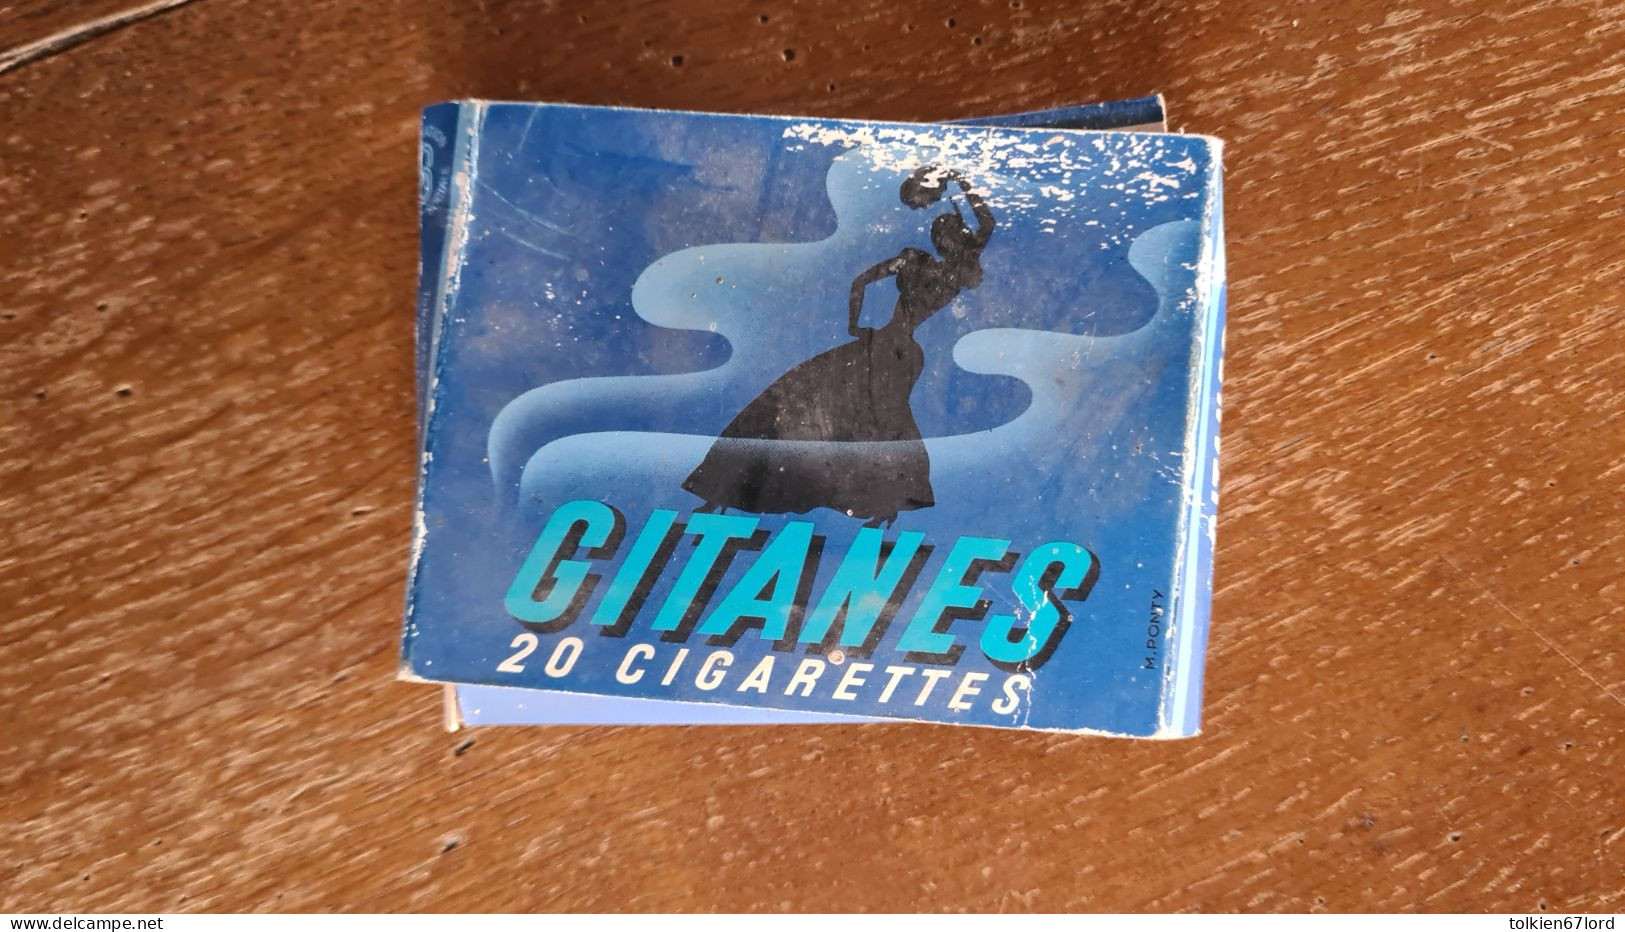 GITANES Boîte étui 20 Cigarettes - Estuches Para Cigarrillos (vacios)